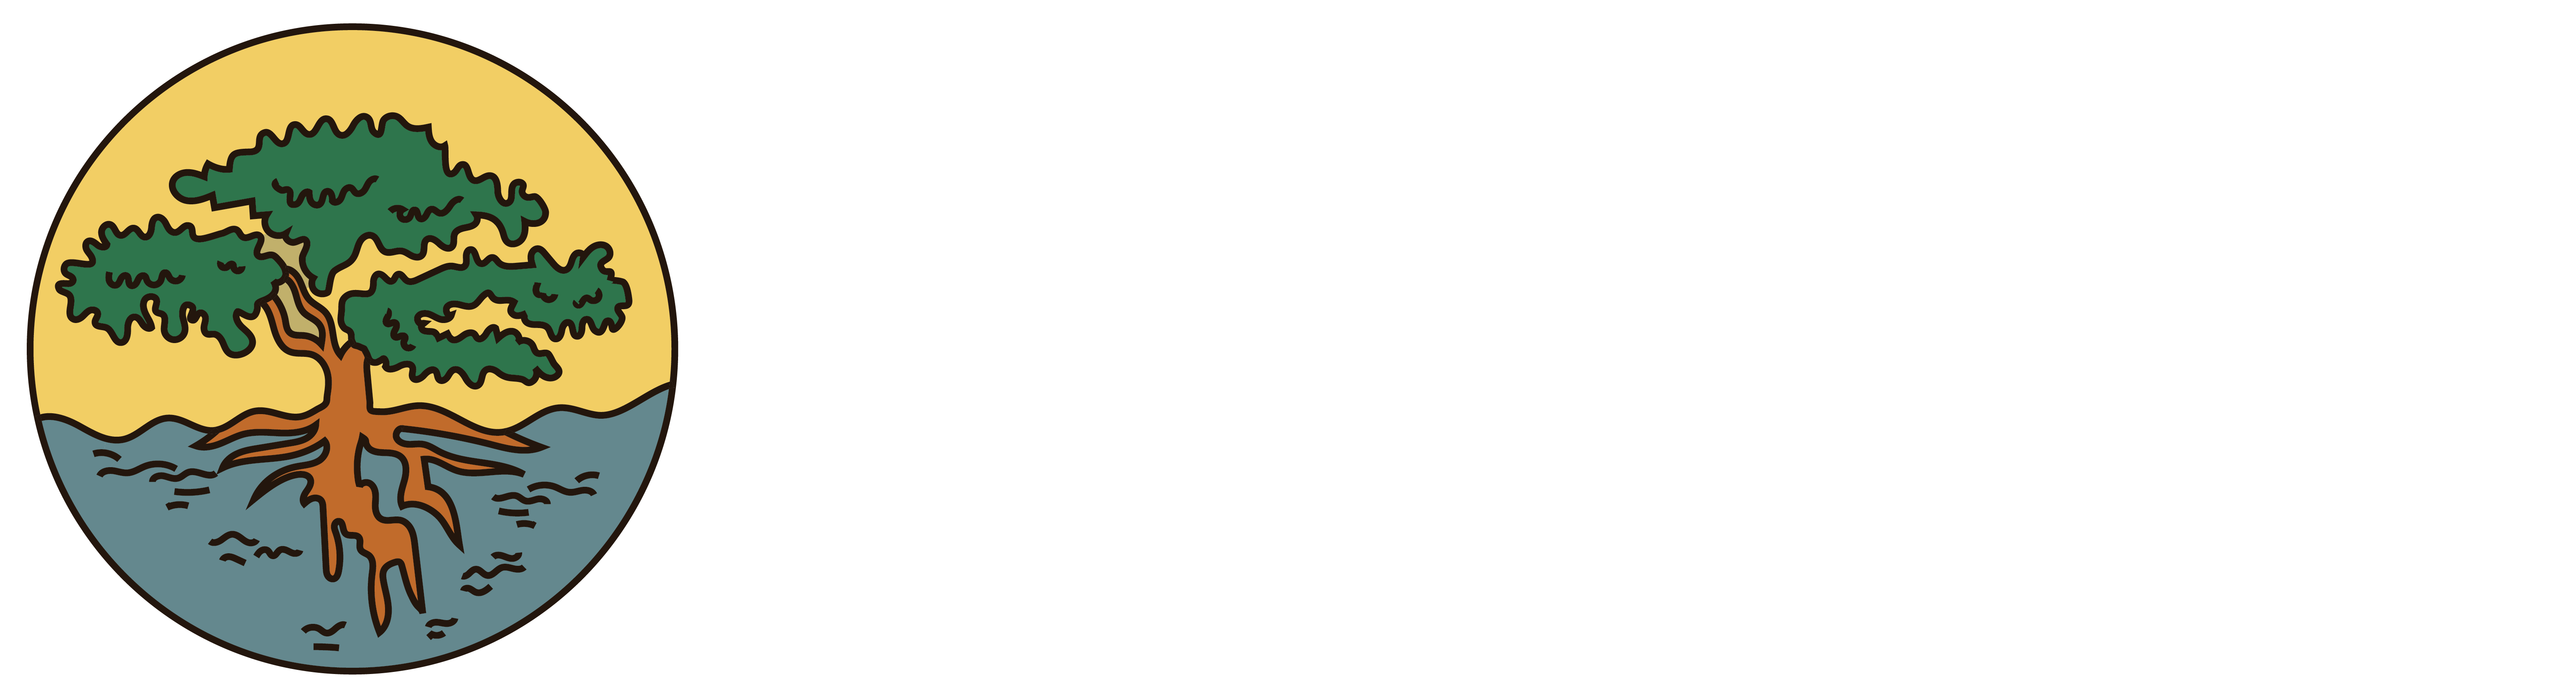 MUKUYU_LOGO-16